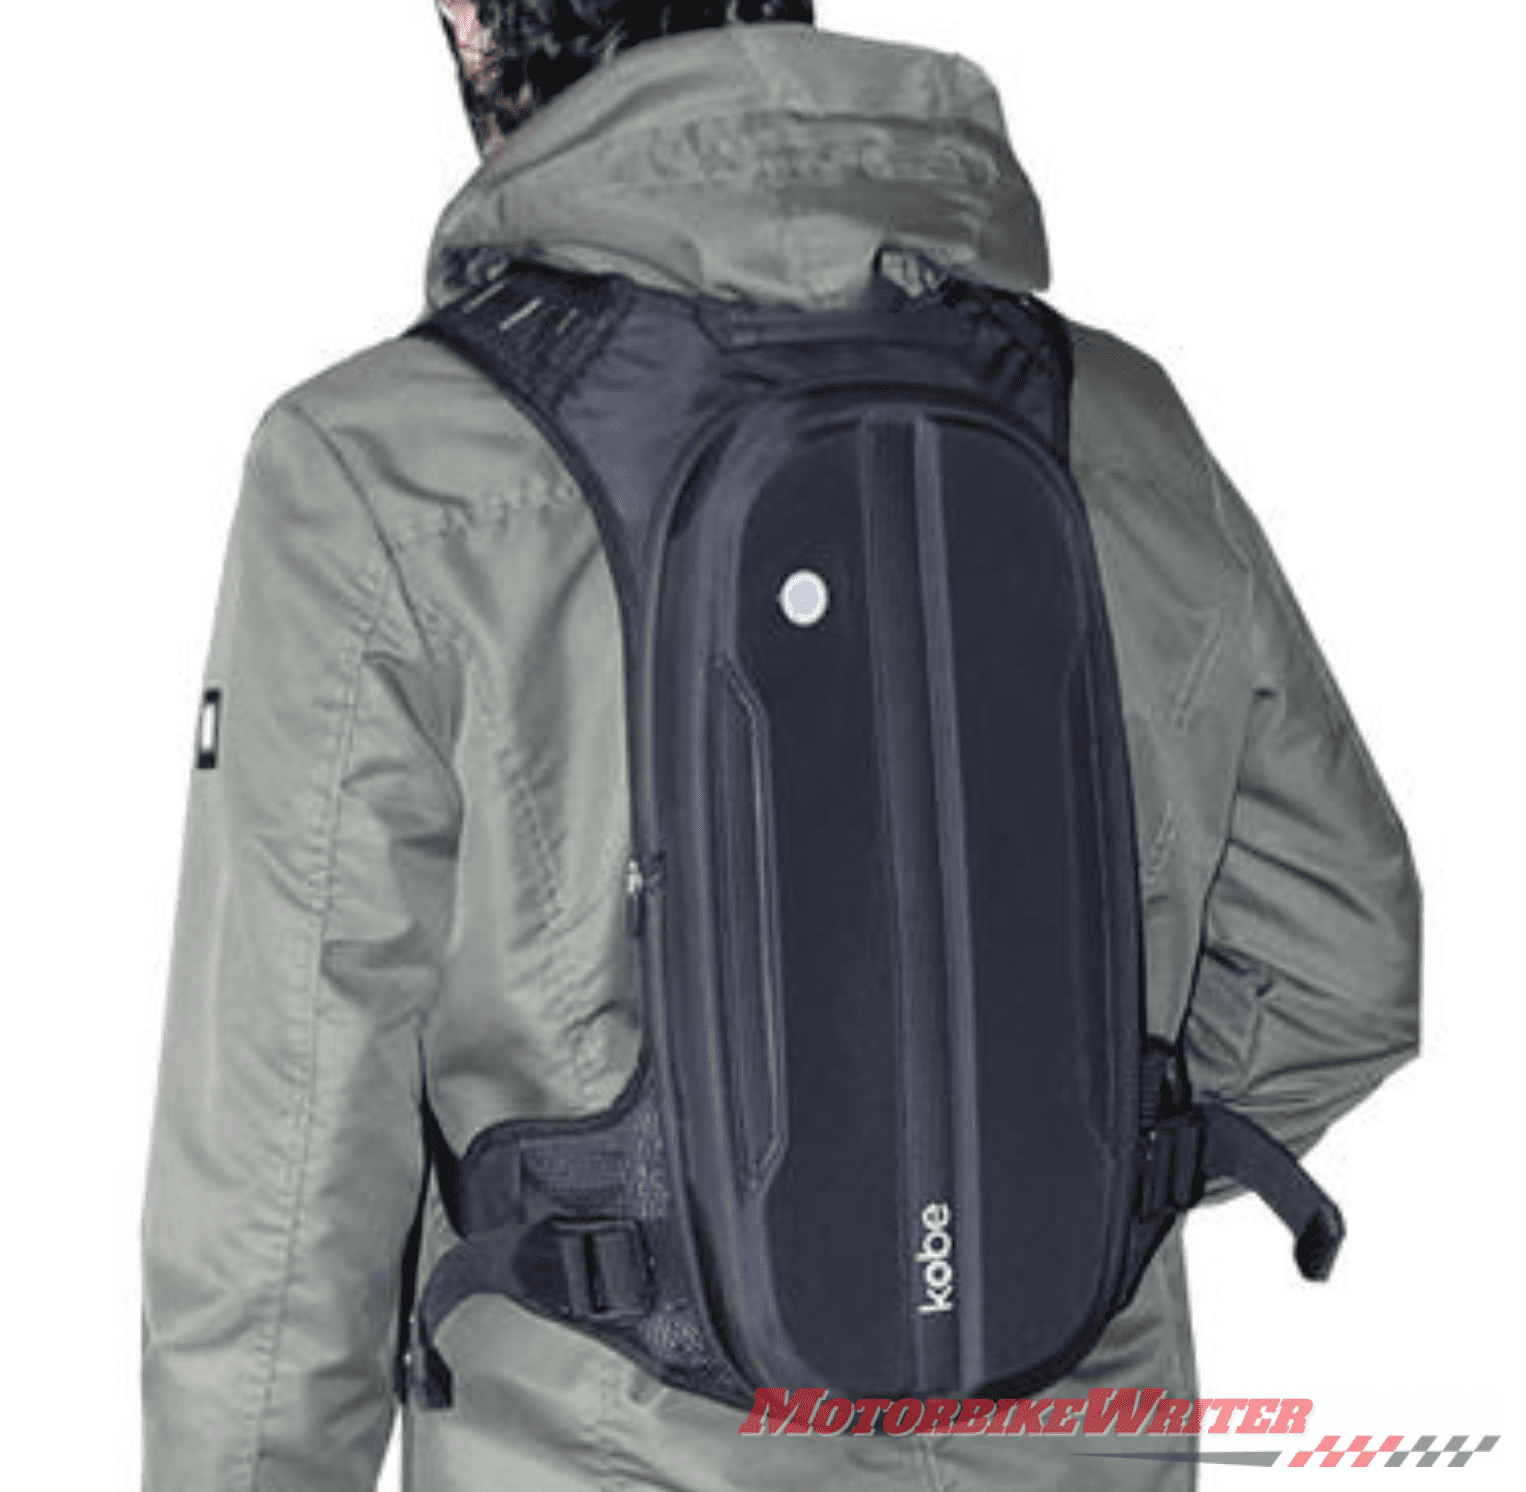 Kobe backpack